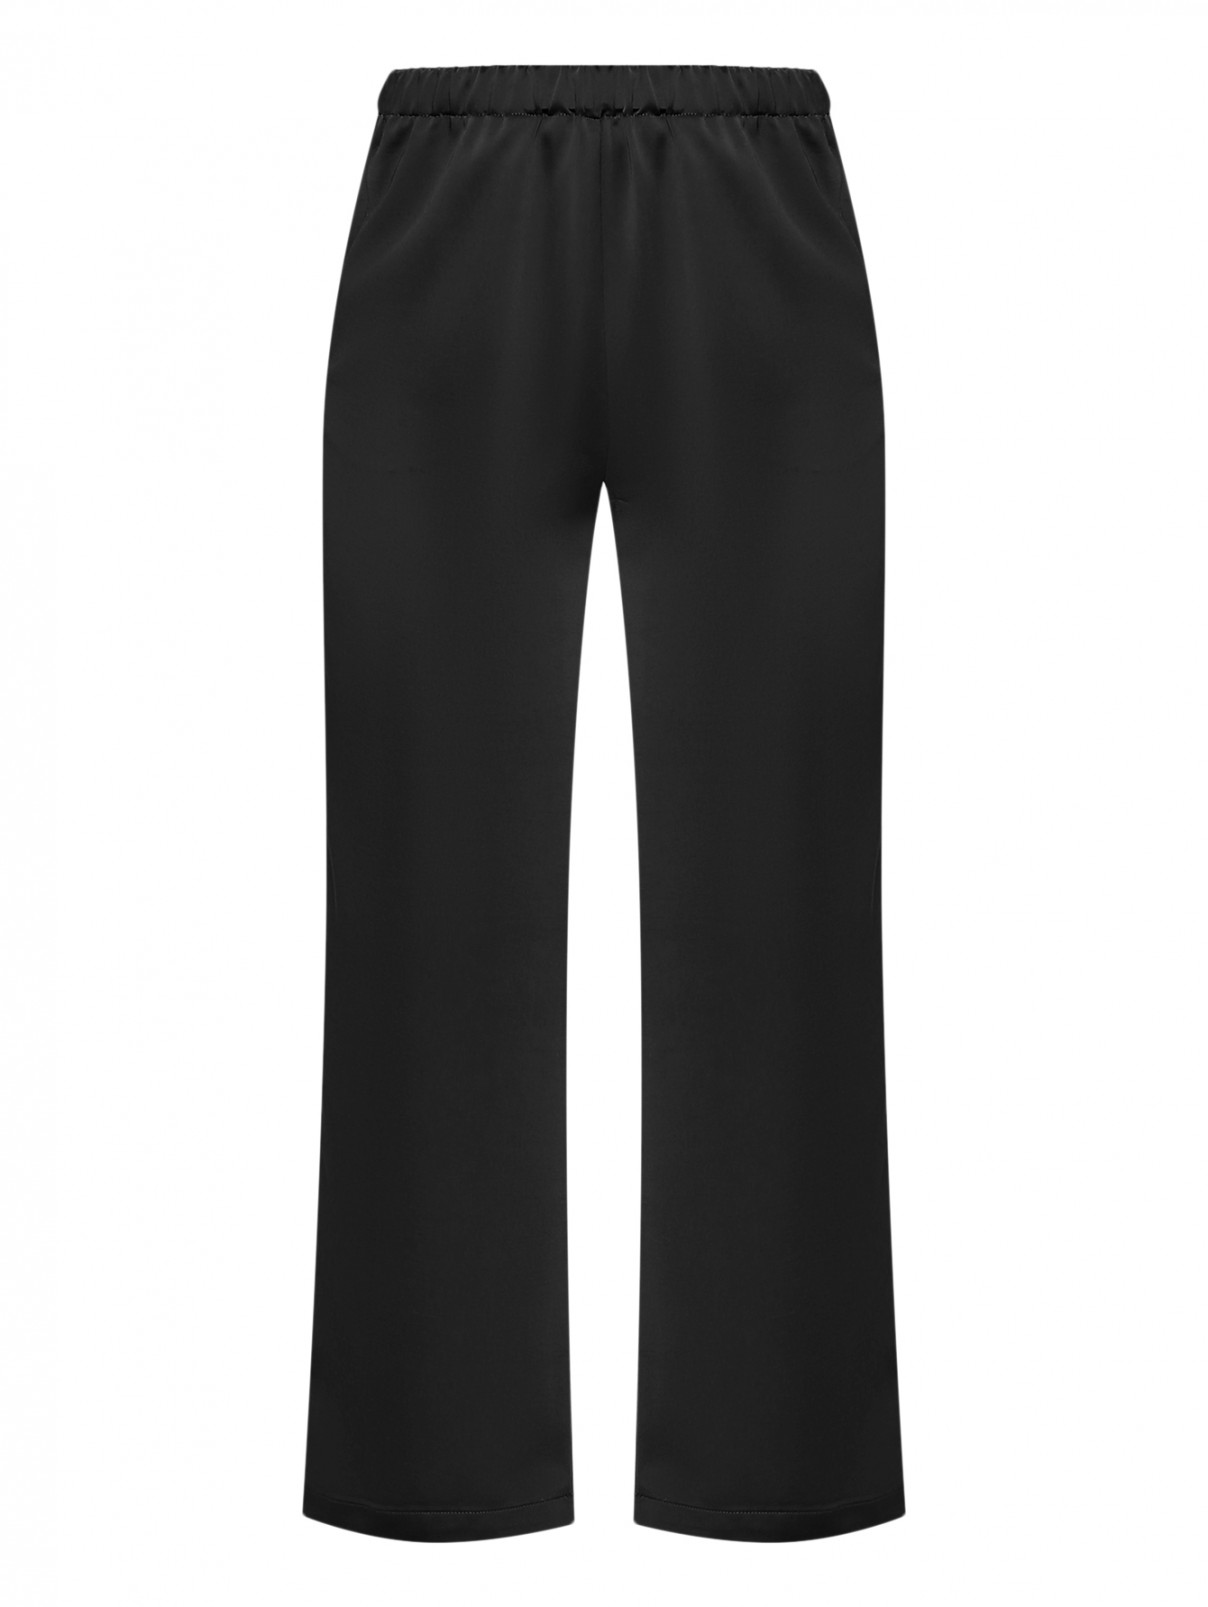 Сатиновые брюки на резинке с карманами Marina Rinaldi  –  Общий вид  – Цвет:  Черный